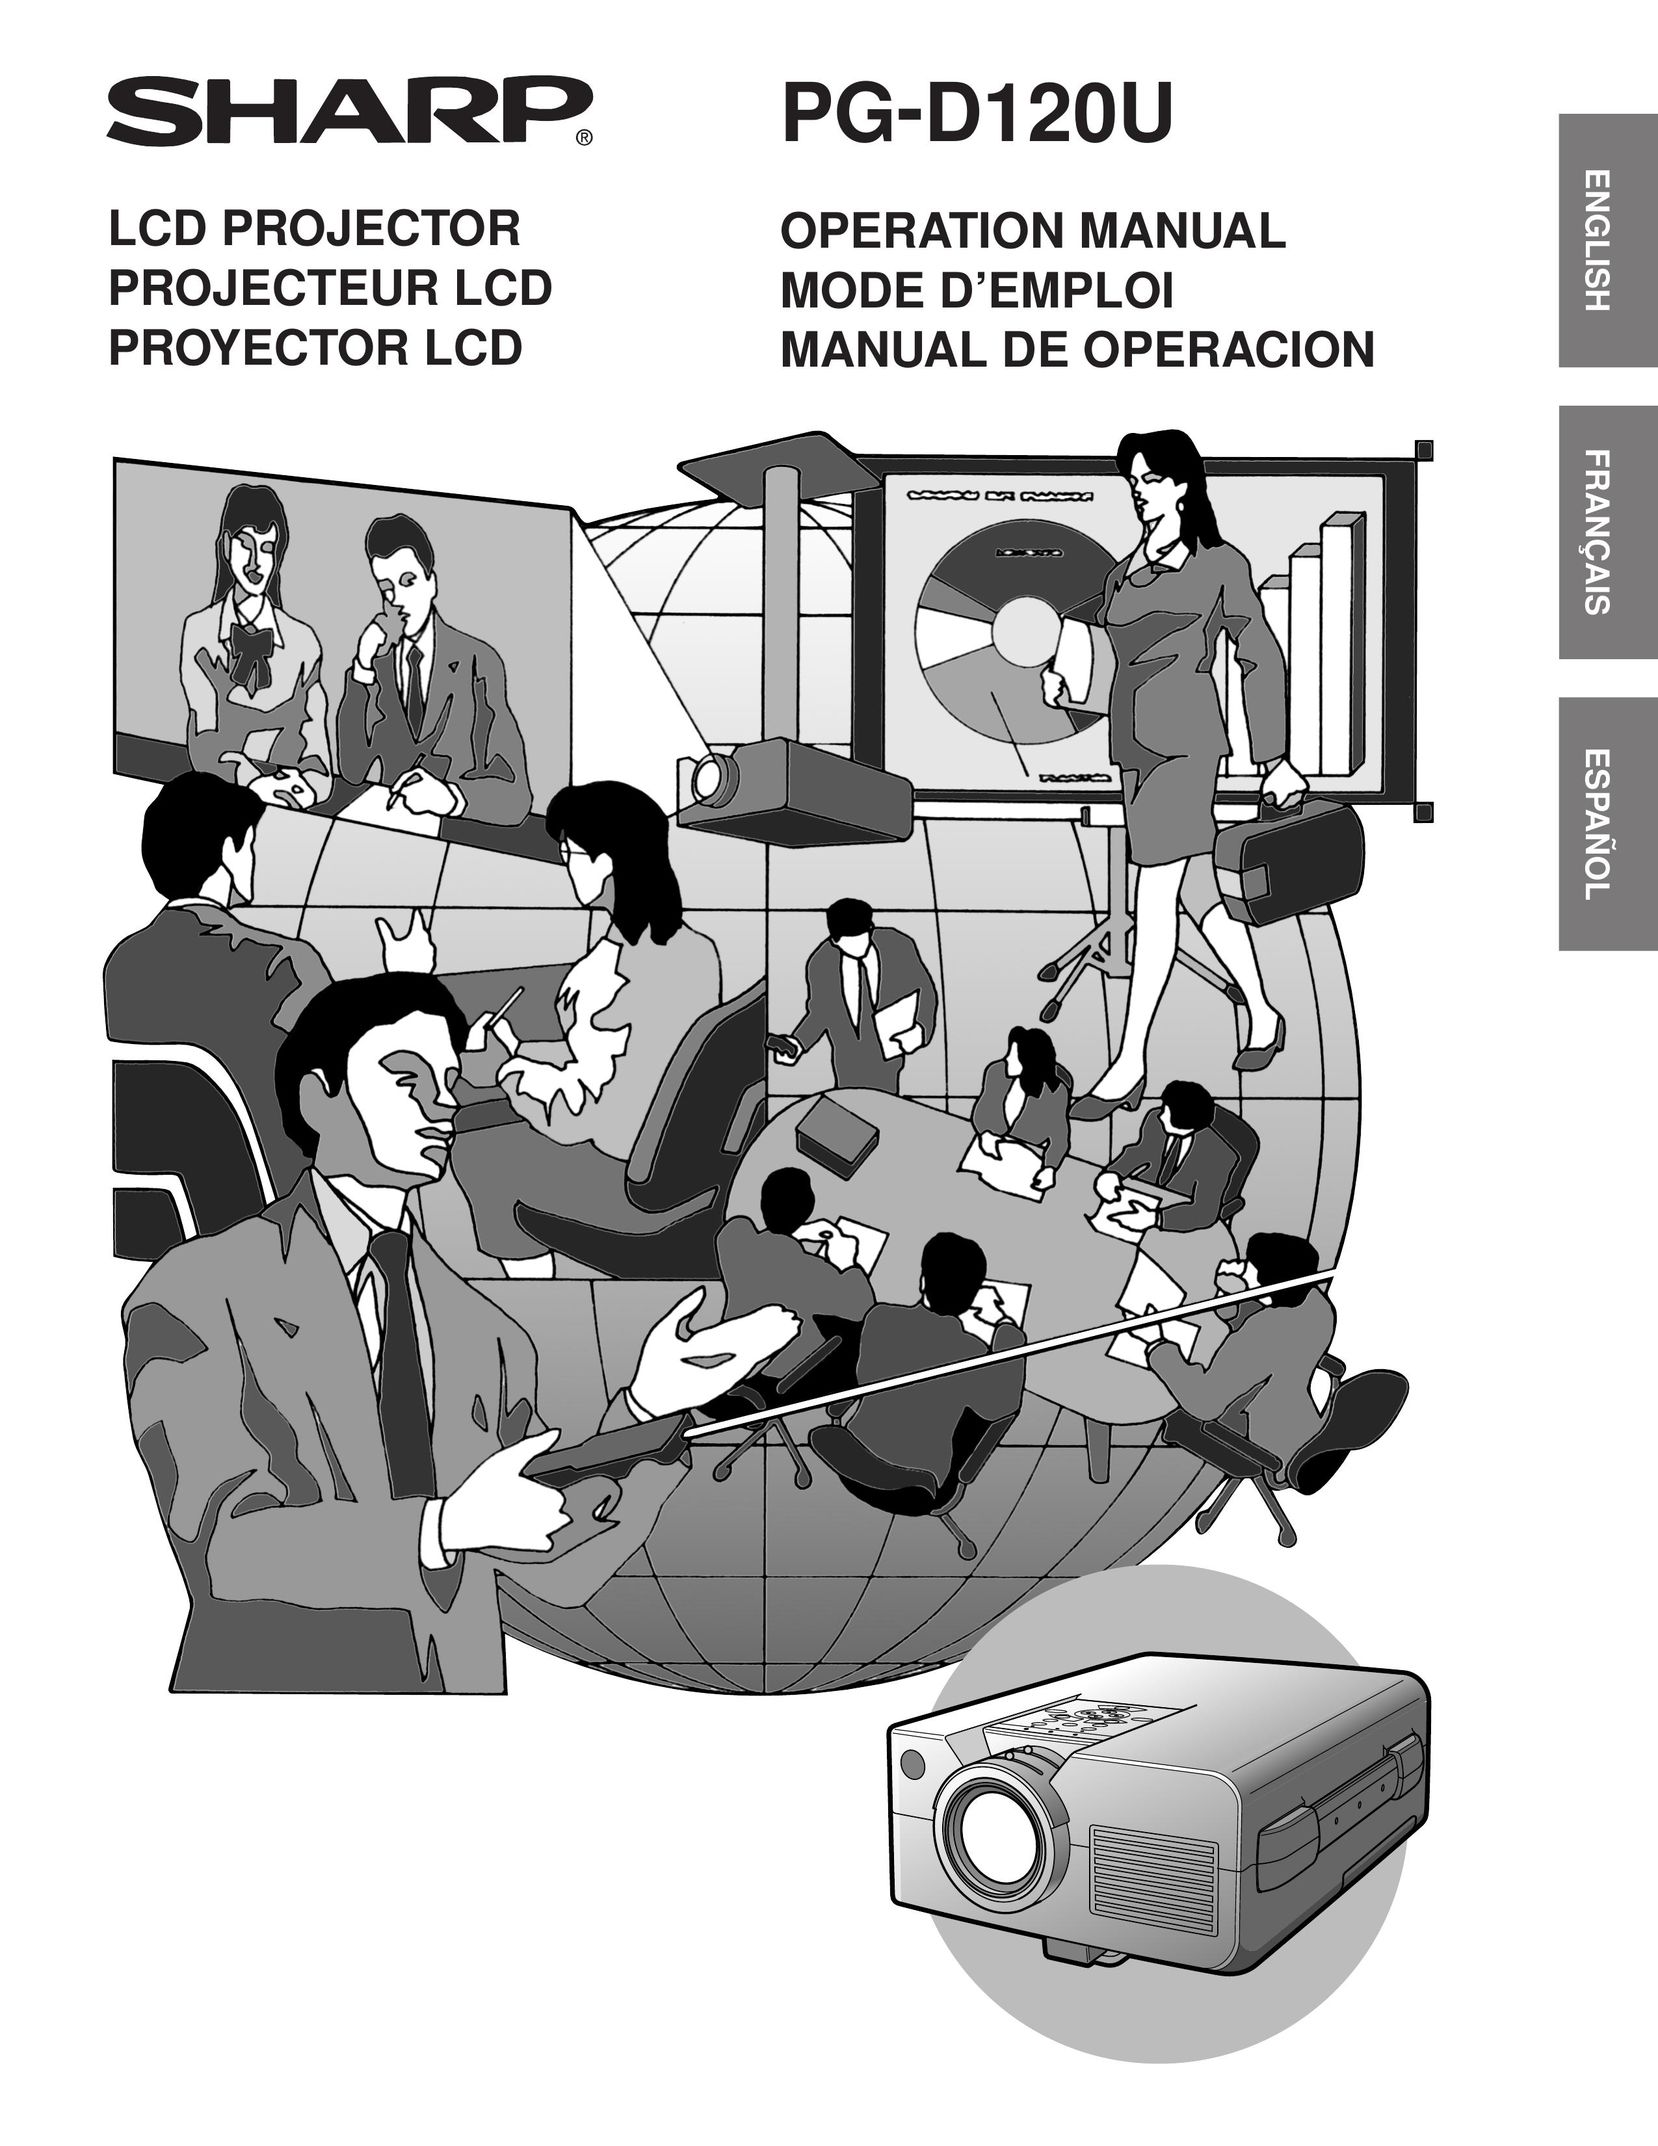 Sharp PG-D120U Projector User Manual